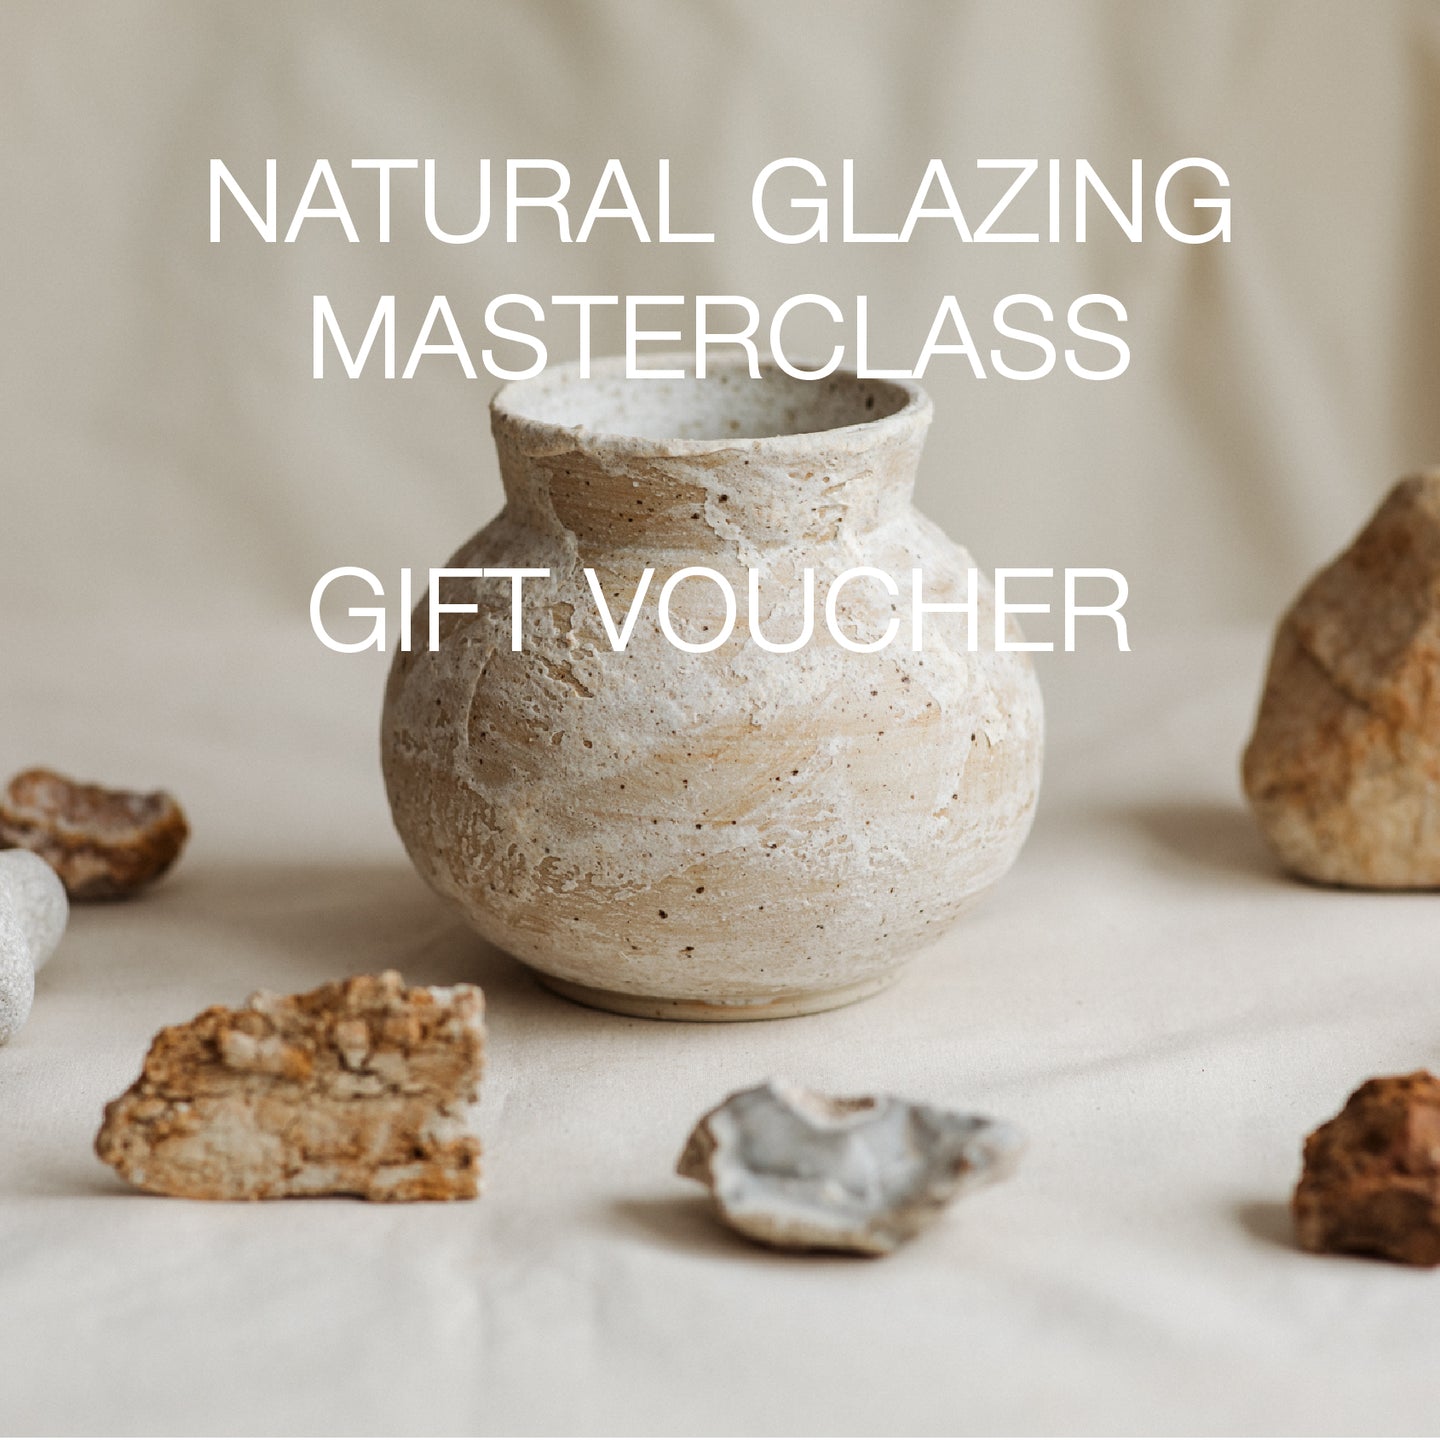 Gift Voucher - Natural Glazing Masterclass